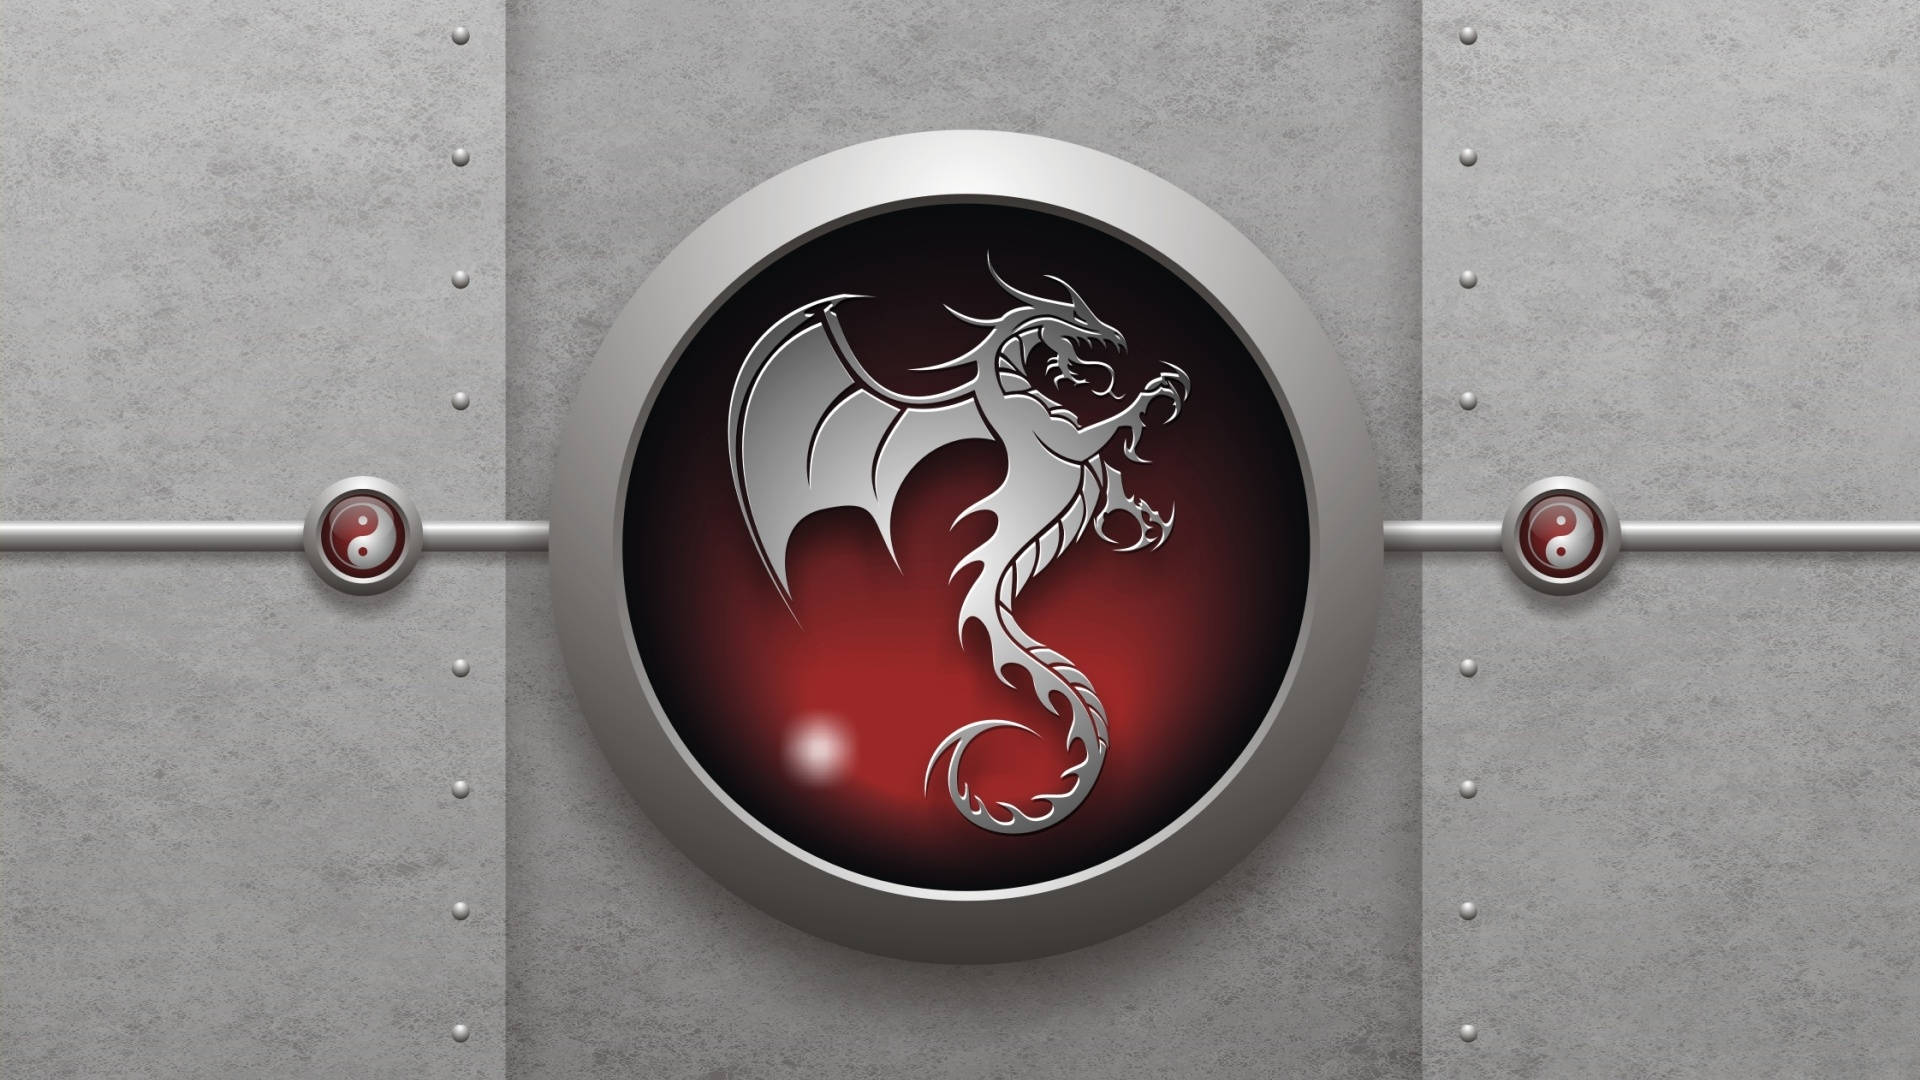 HD Dragon Metal Emblem Tapet: Din skærm kan sættes i scene med et mønstret mønster af et metal drakeemblem. Wallpaper